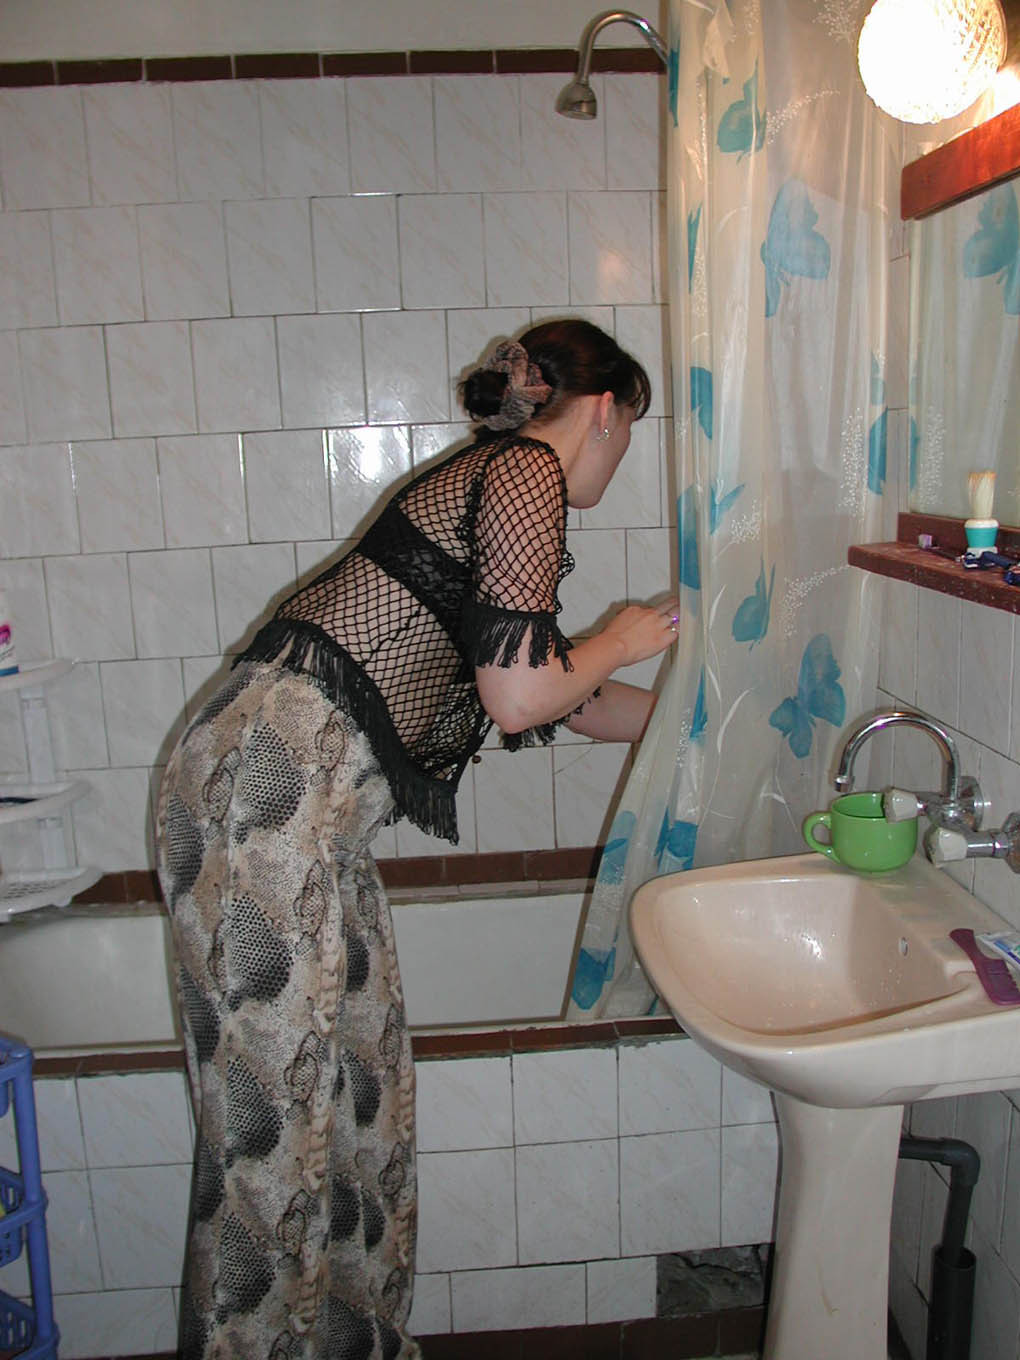 Voyeur Dorm Babe Caught Taking A Shower On Hidden Spy Cam